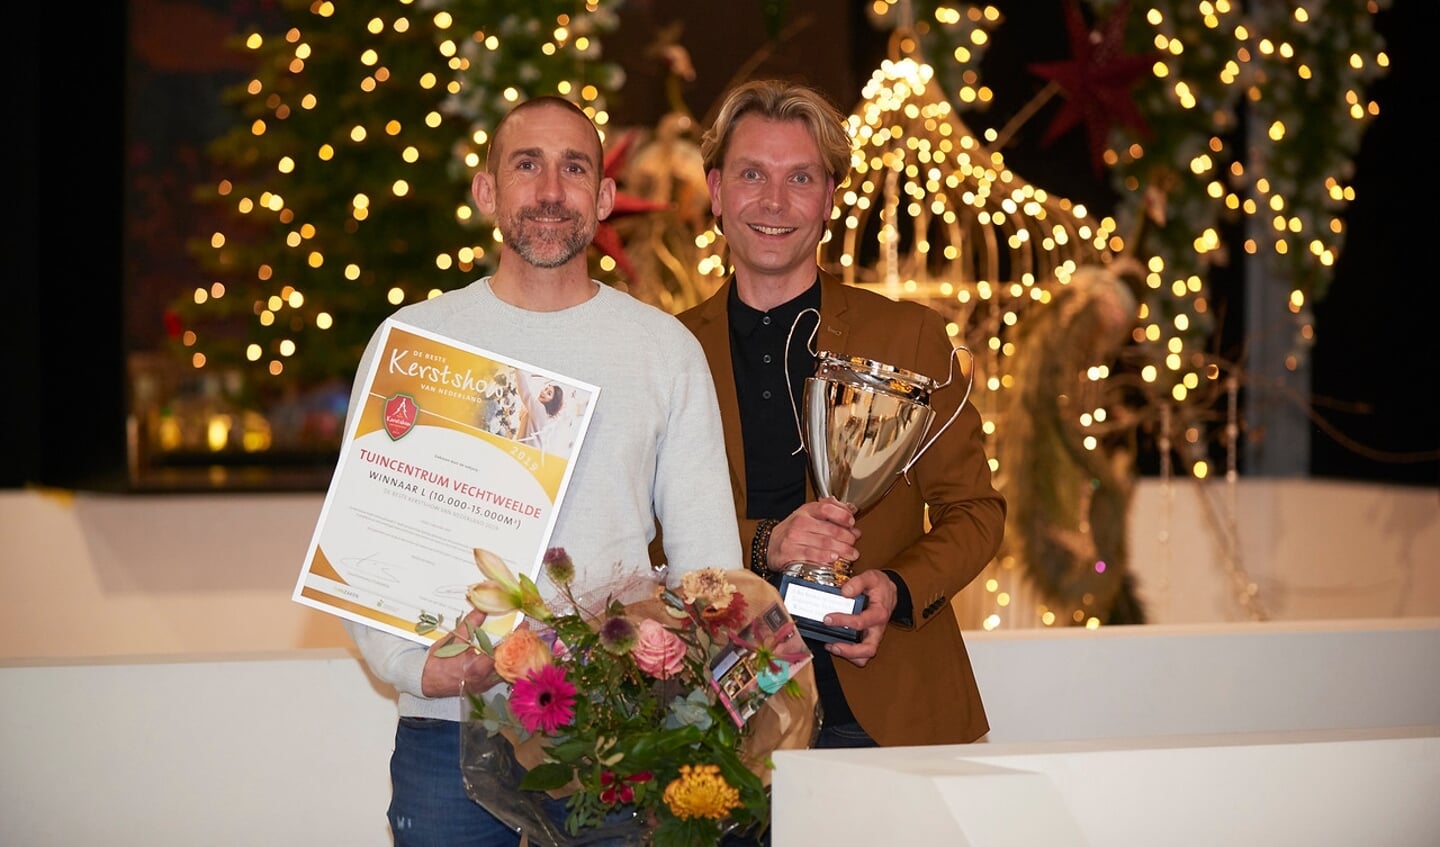 copyright Fred Roest, fotografie voor TPK Media en Tuinbranche Nederland, winnaars Beste Kersshow 2019, winnaar categorie L Tuincentrum Vechtweelde